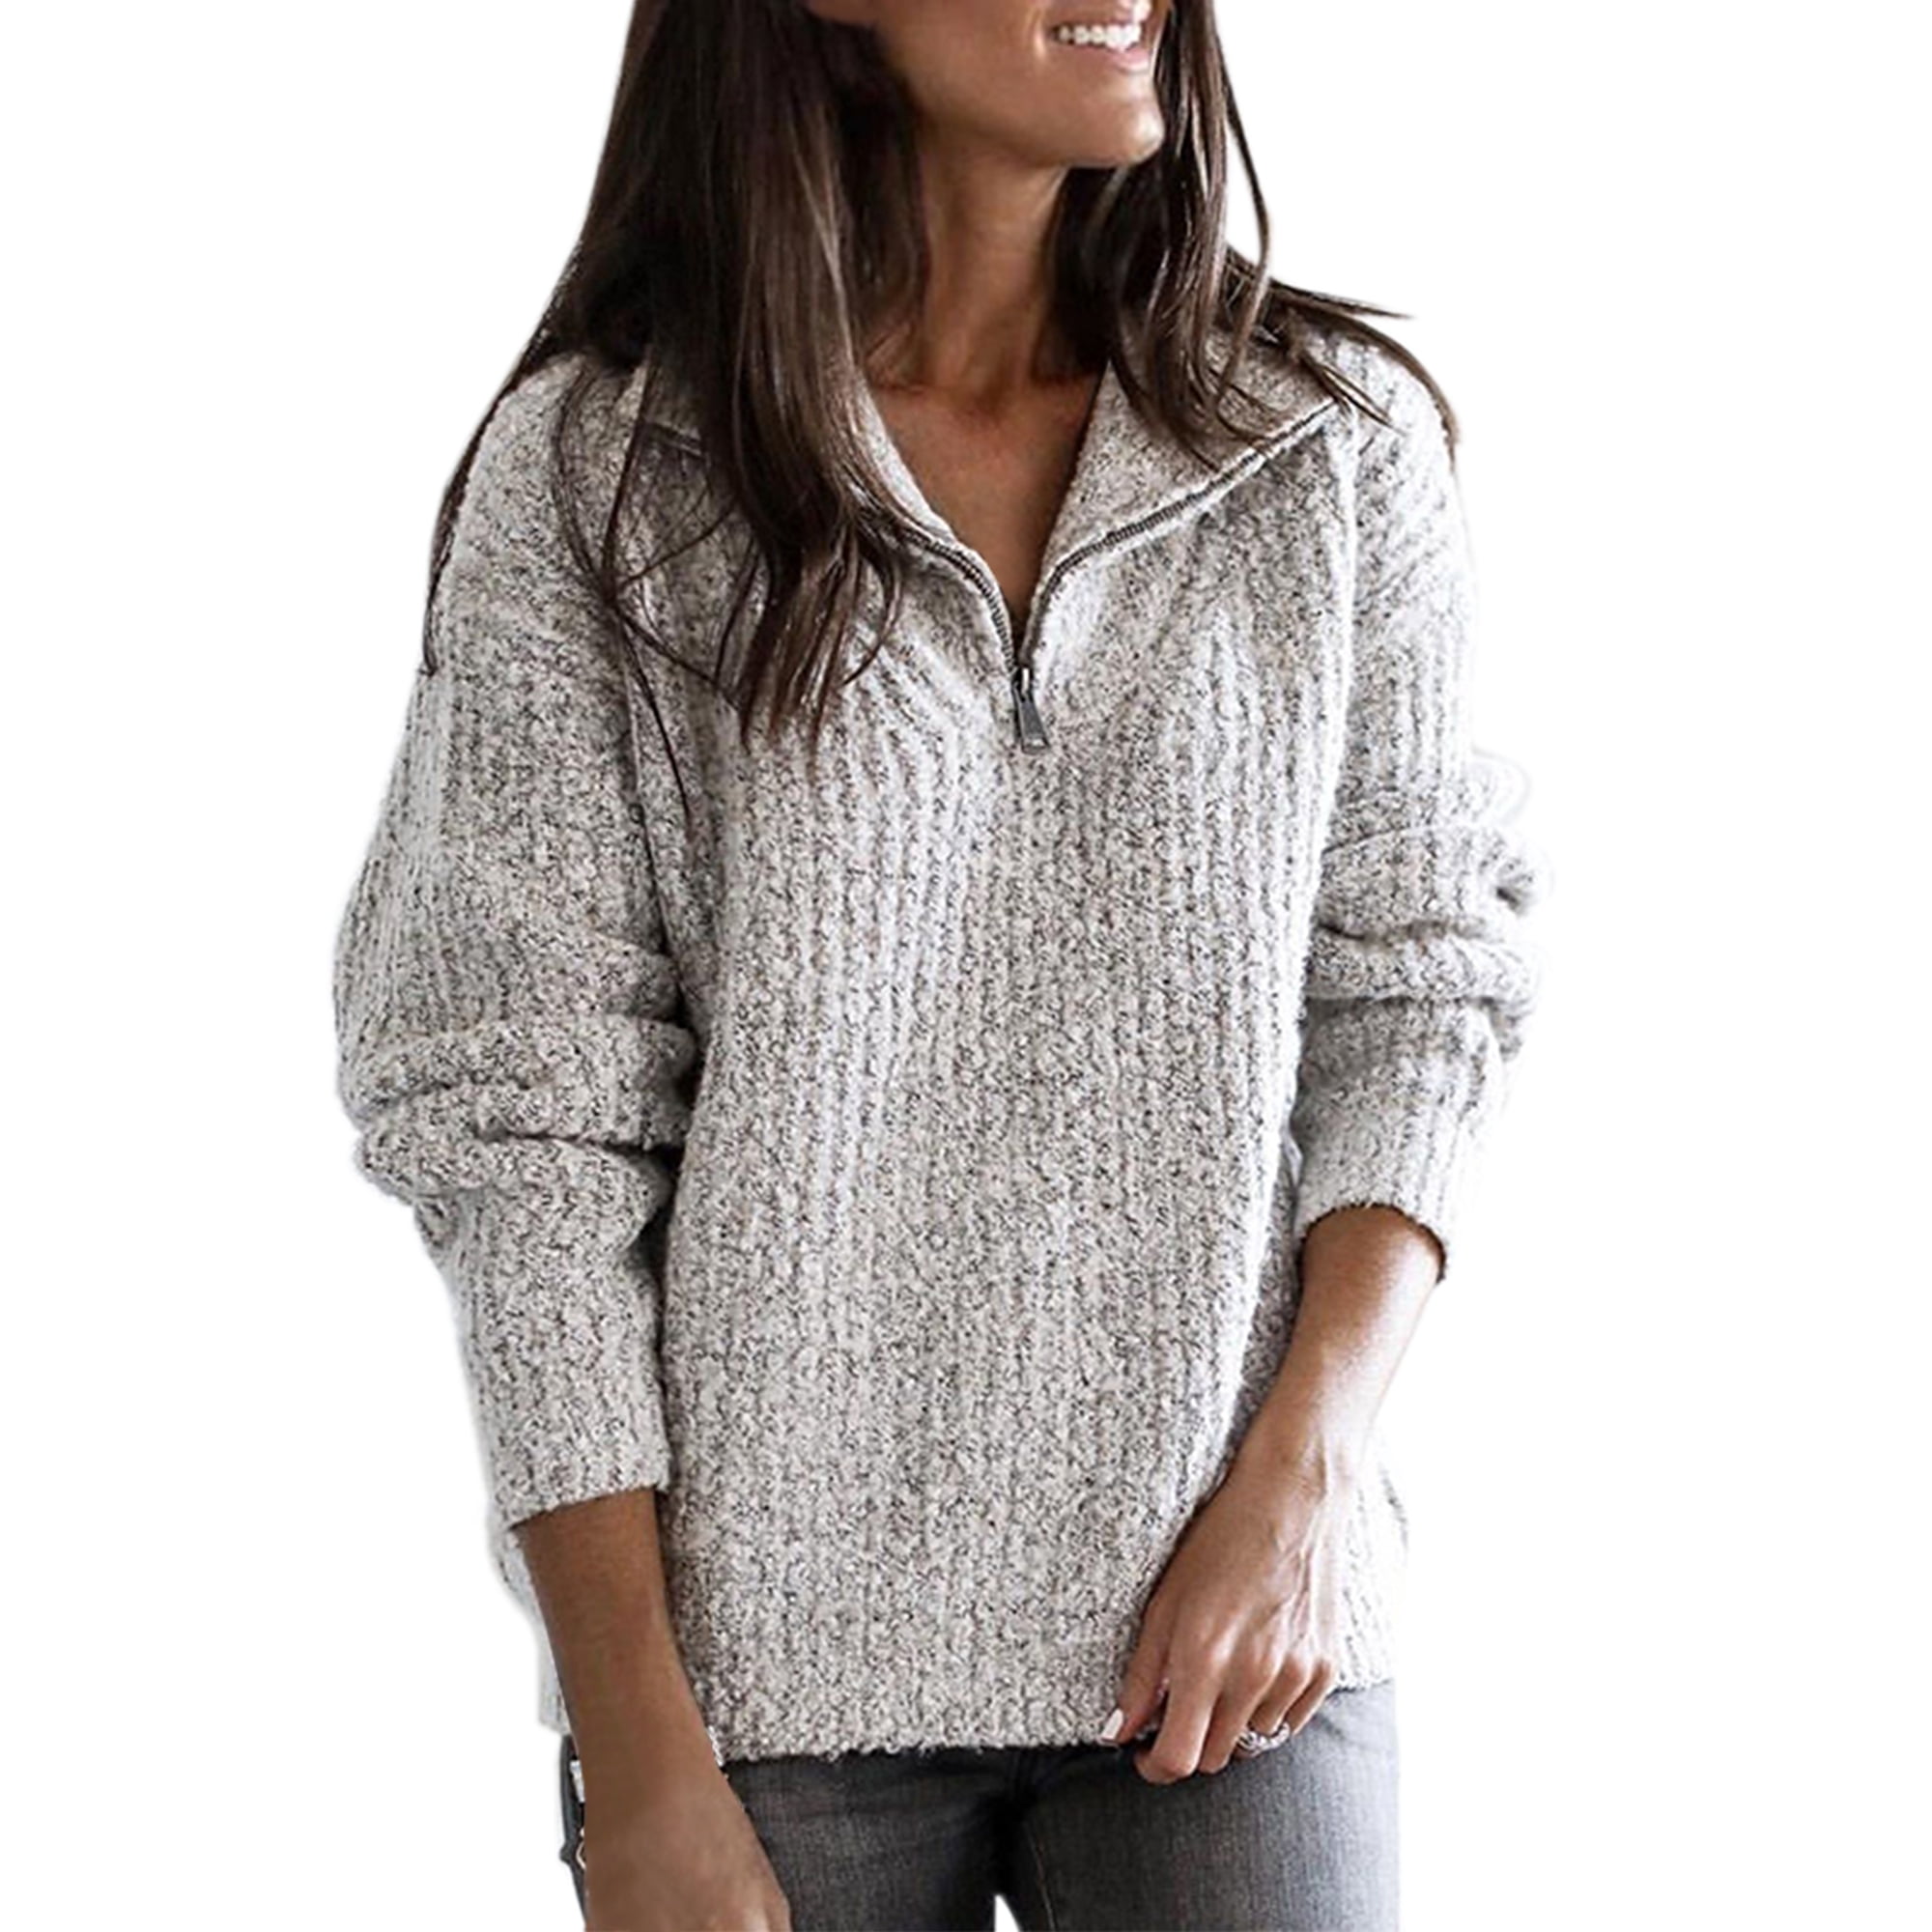 Women's Long Sleeve Fleece Loose Winter Warm Sweater Casual Jumper Pullover Tops